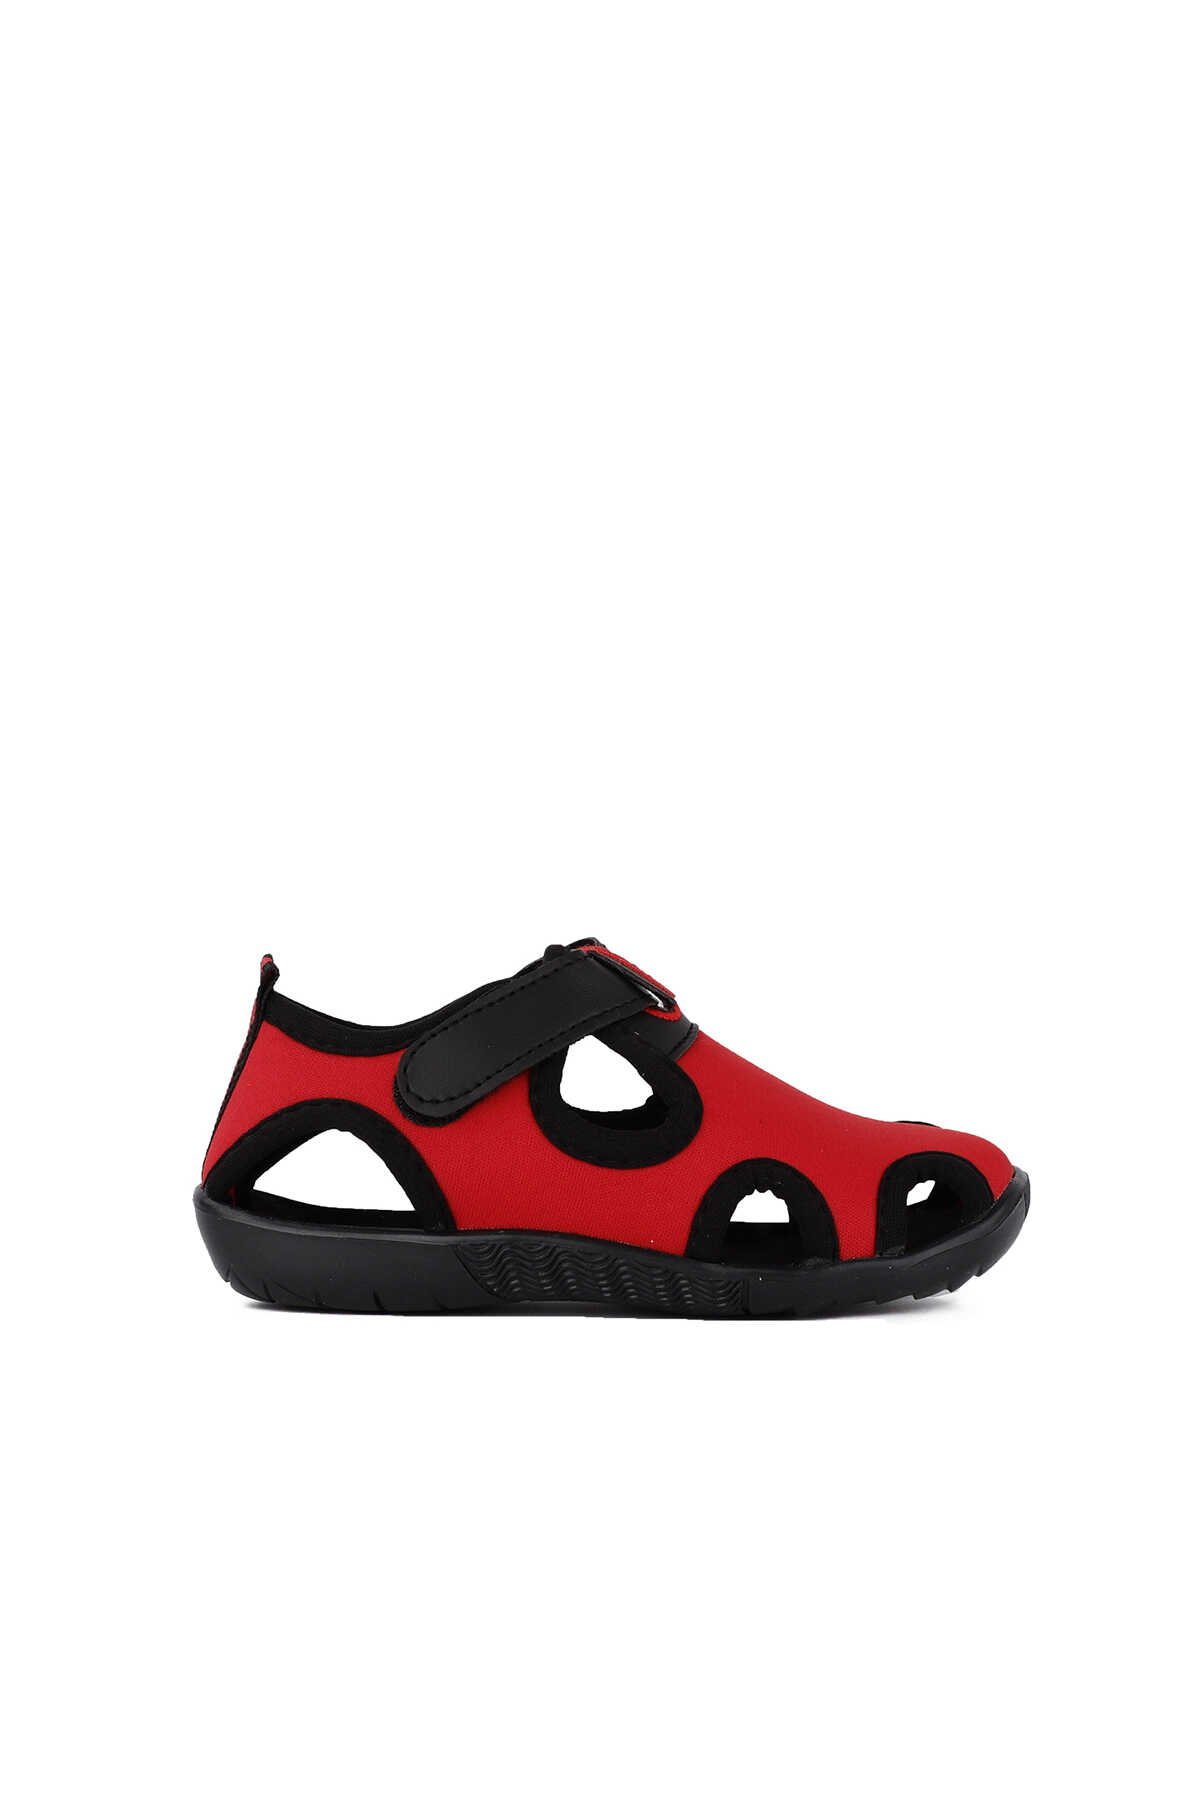 Slazenger - Slazenger UNNI Kız Çocuk Sandalet Kırmızı